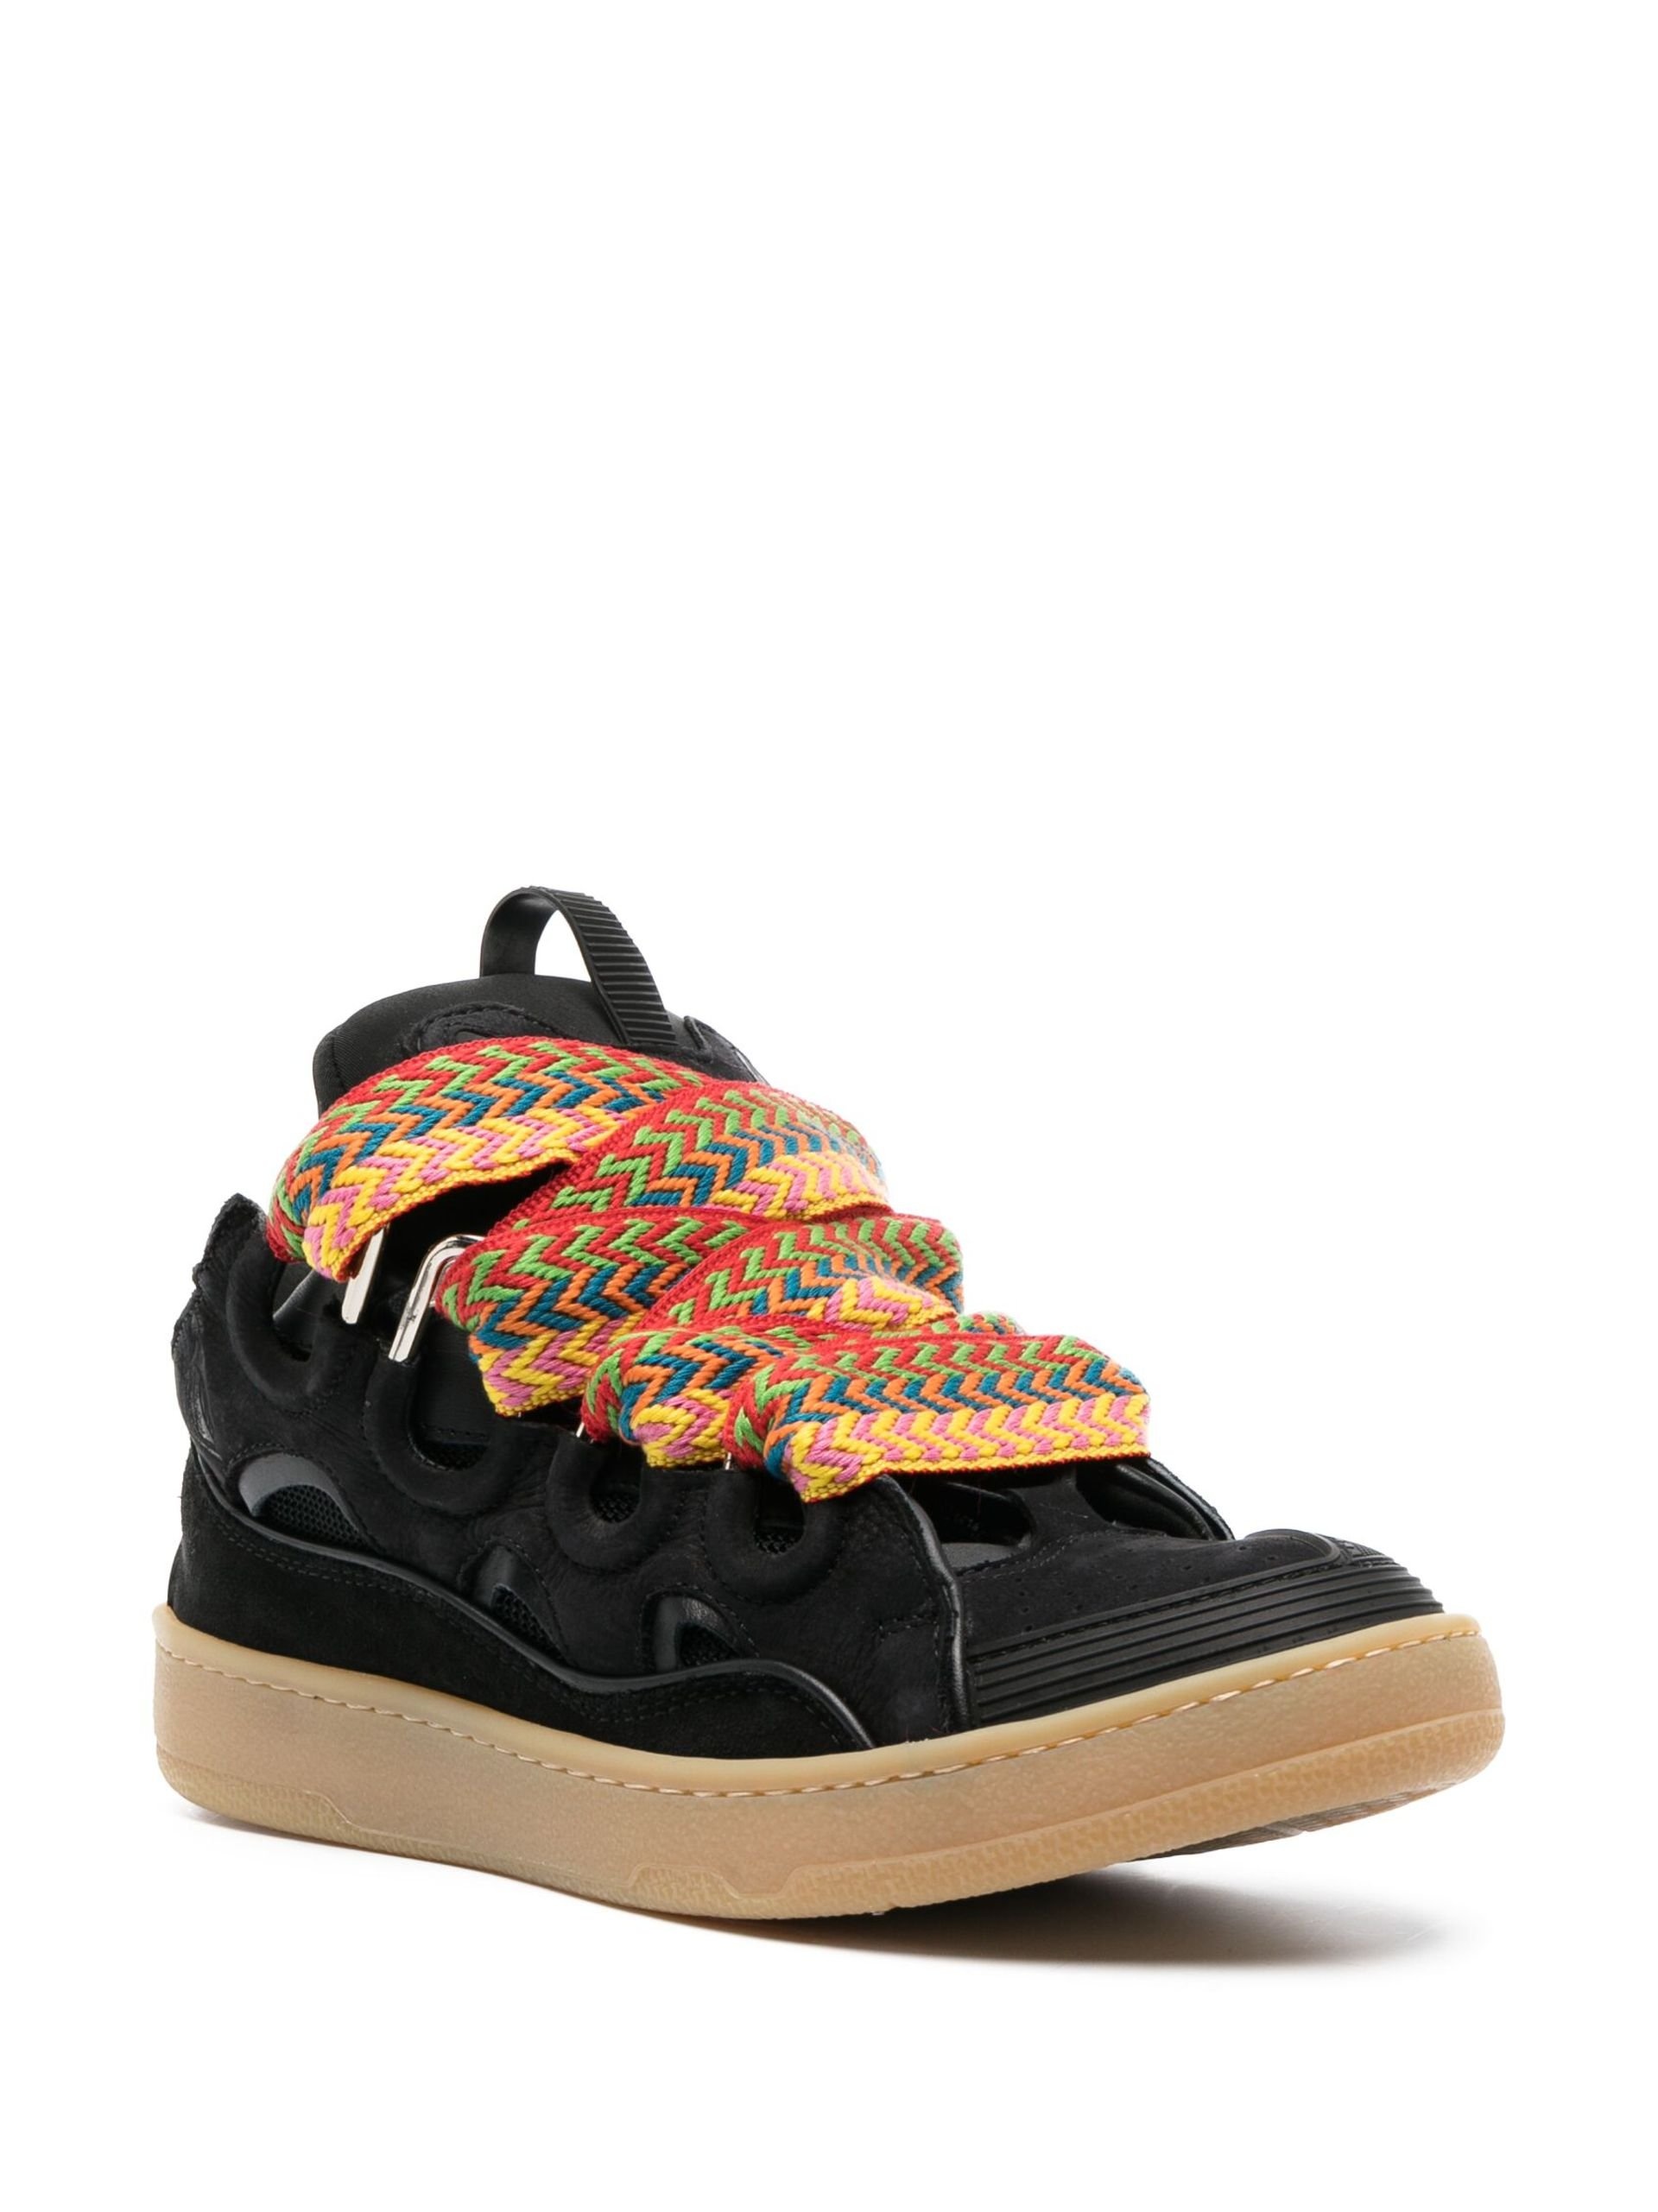 Black Curb Suede Sneakers - 2